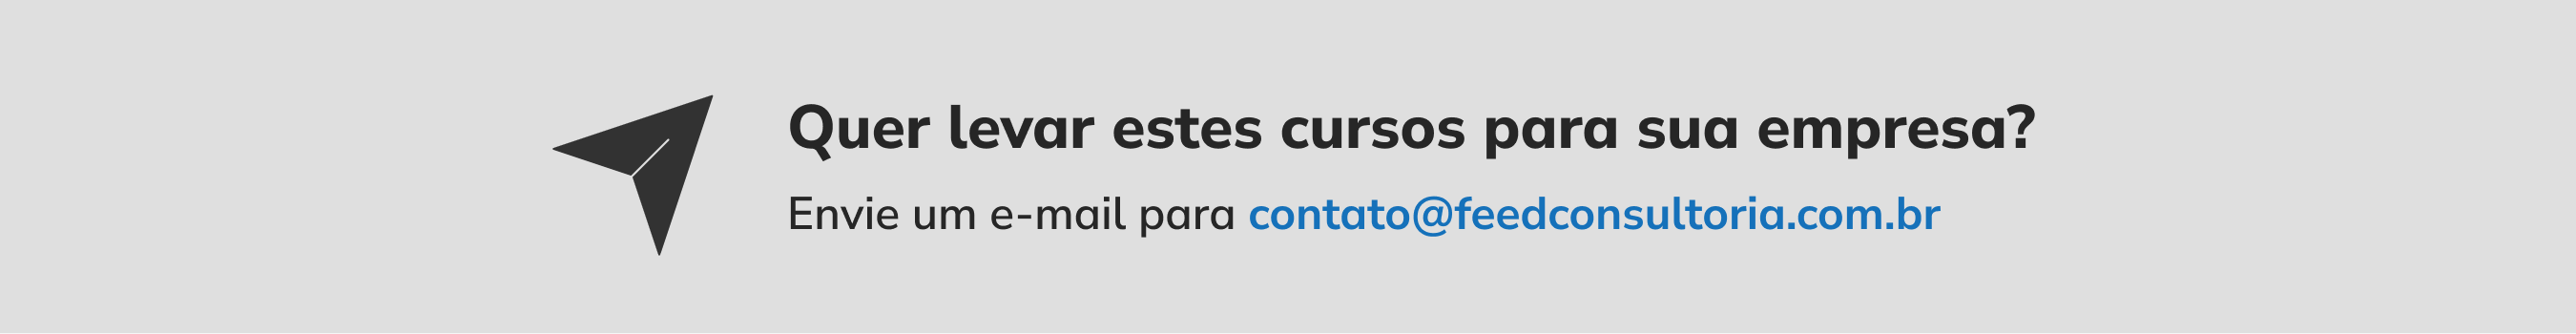 Quer levar estes cursos para sua empresa? Envie um e-mail para contato@feedconsultoria.com.br